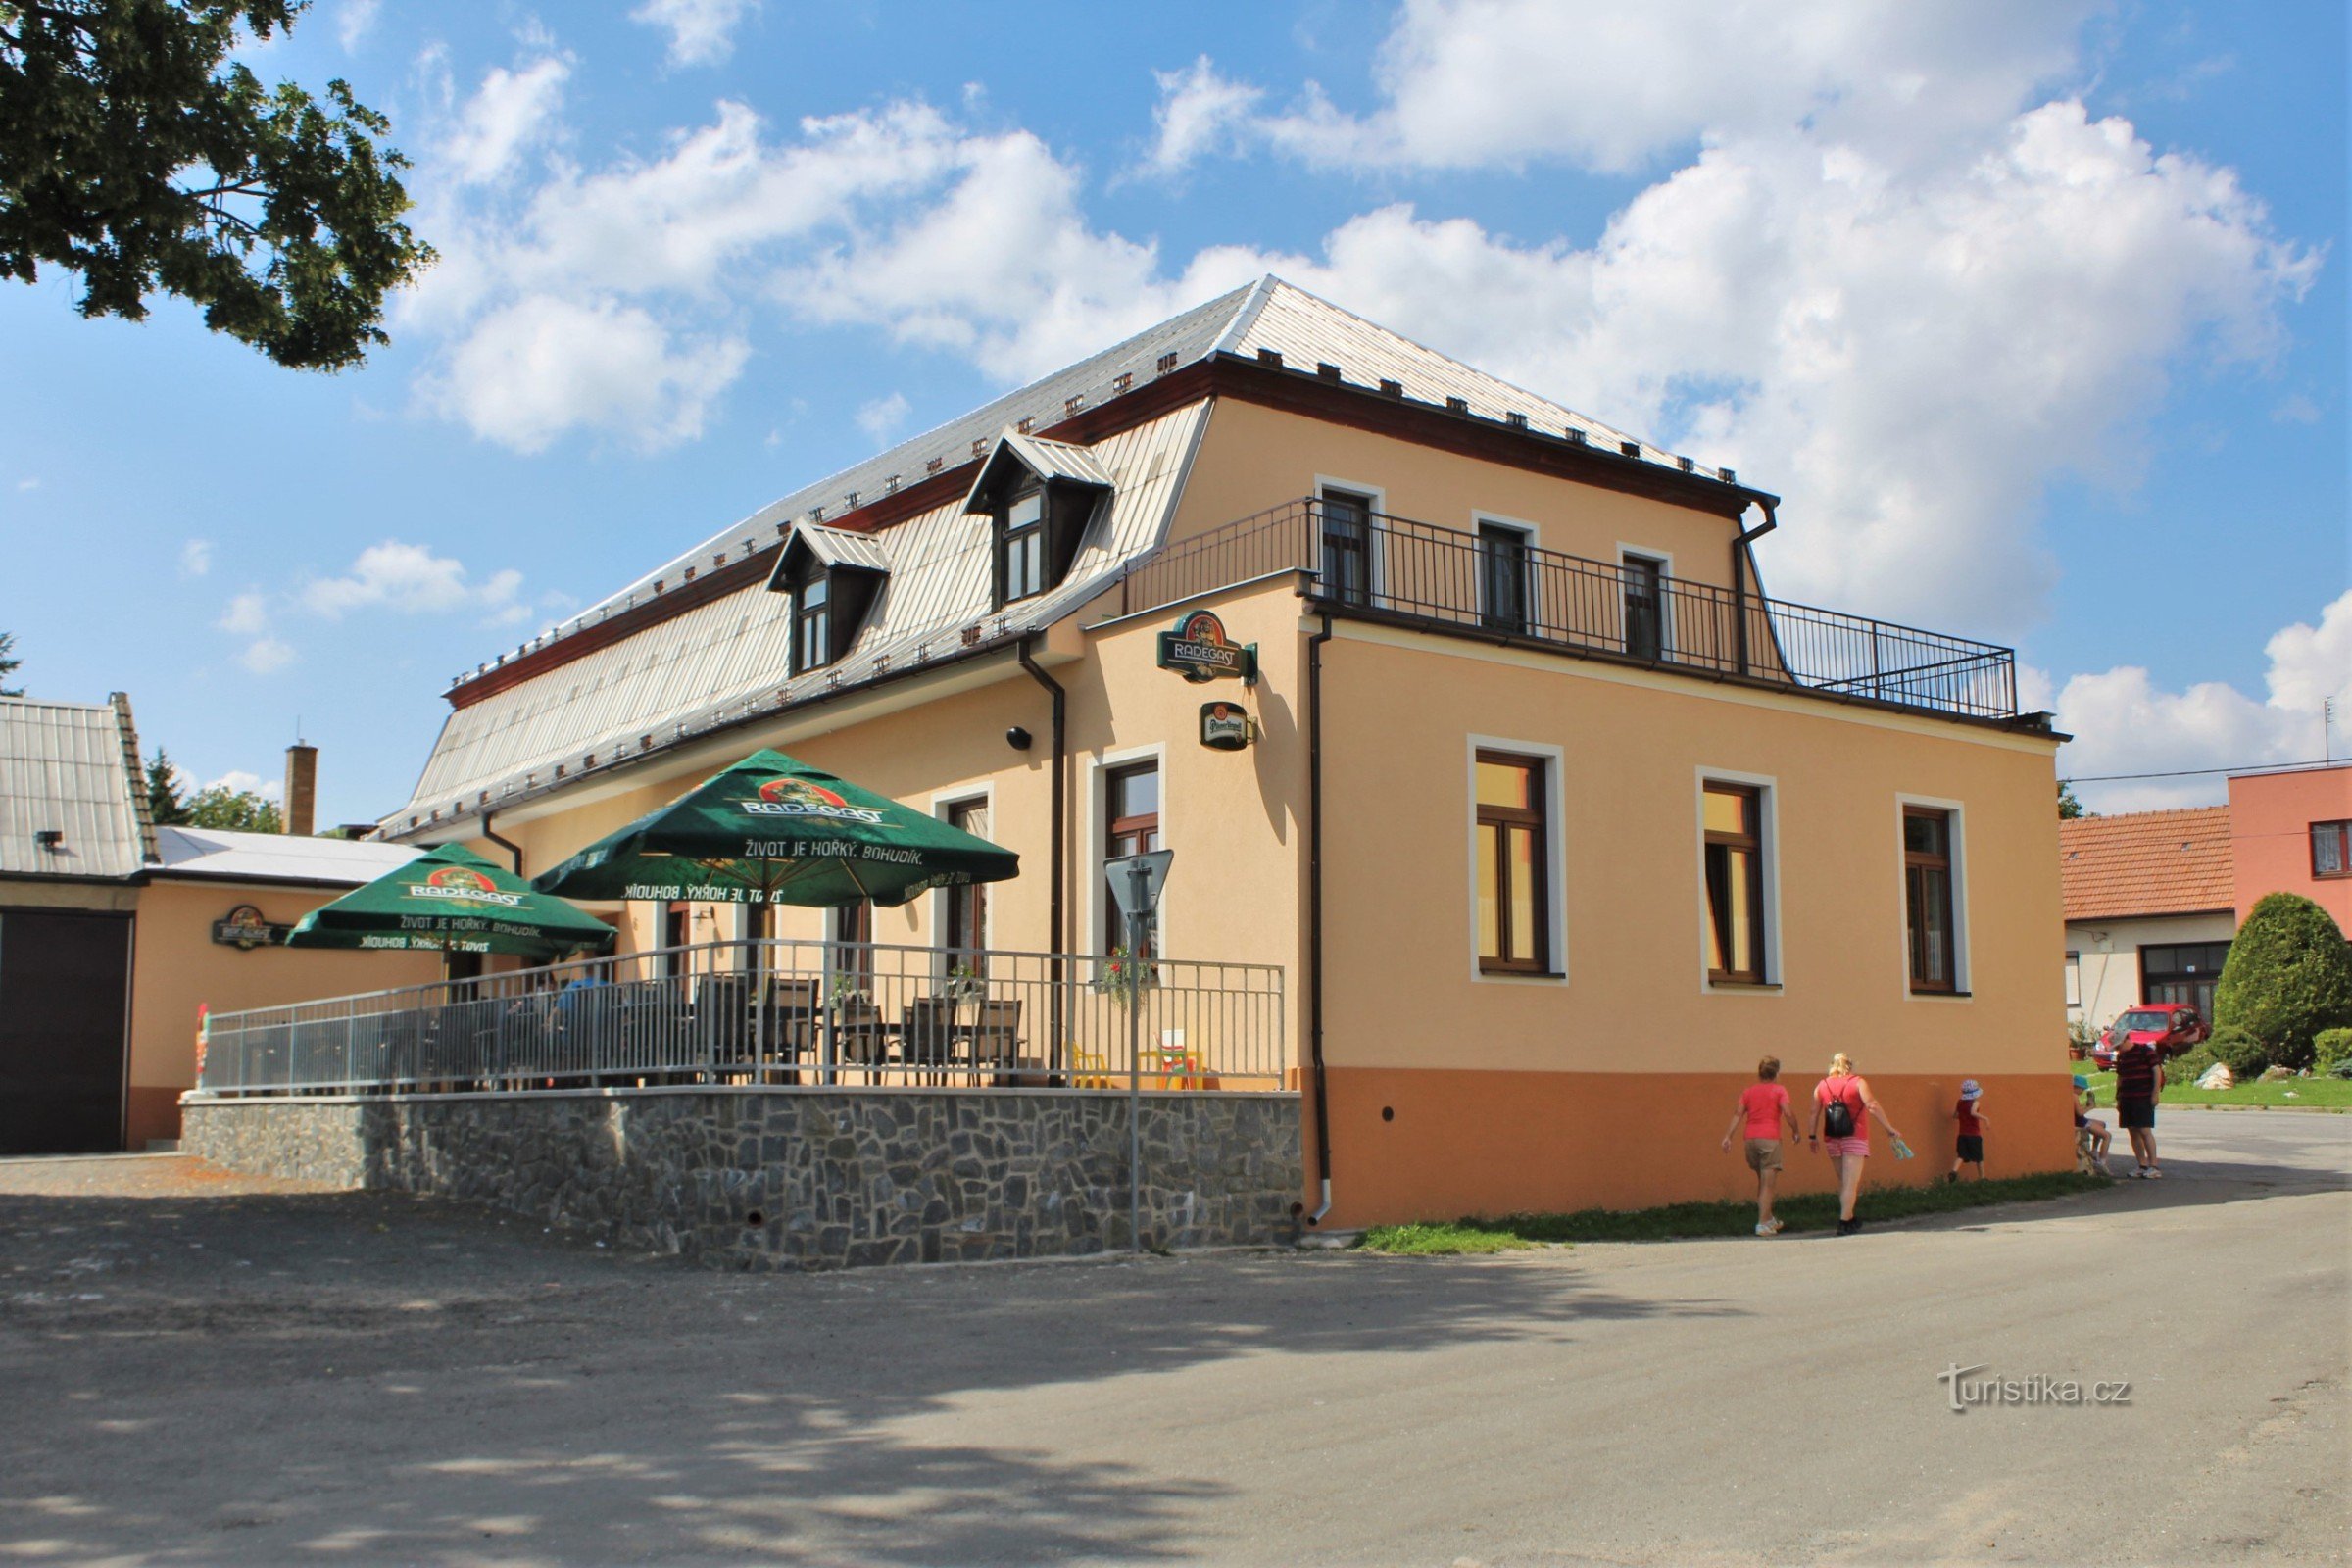 O Staré časy Inn oferece refeições durante todo o dia e também tem uma recepção no verão